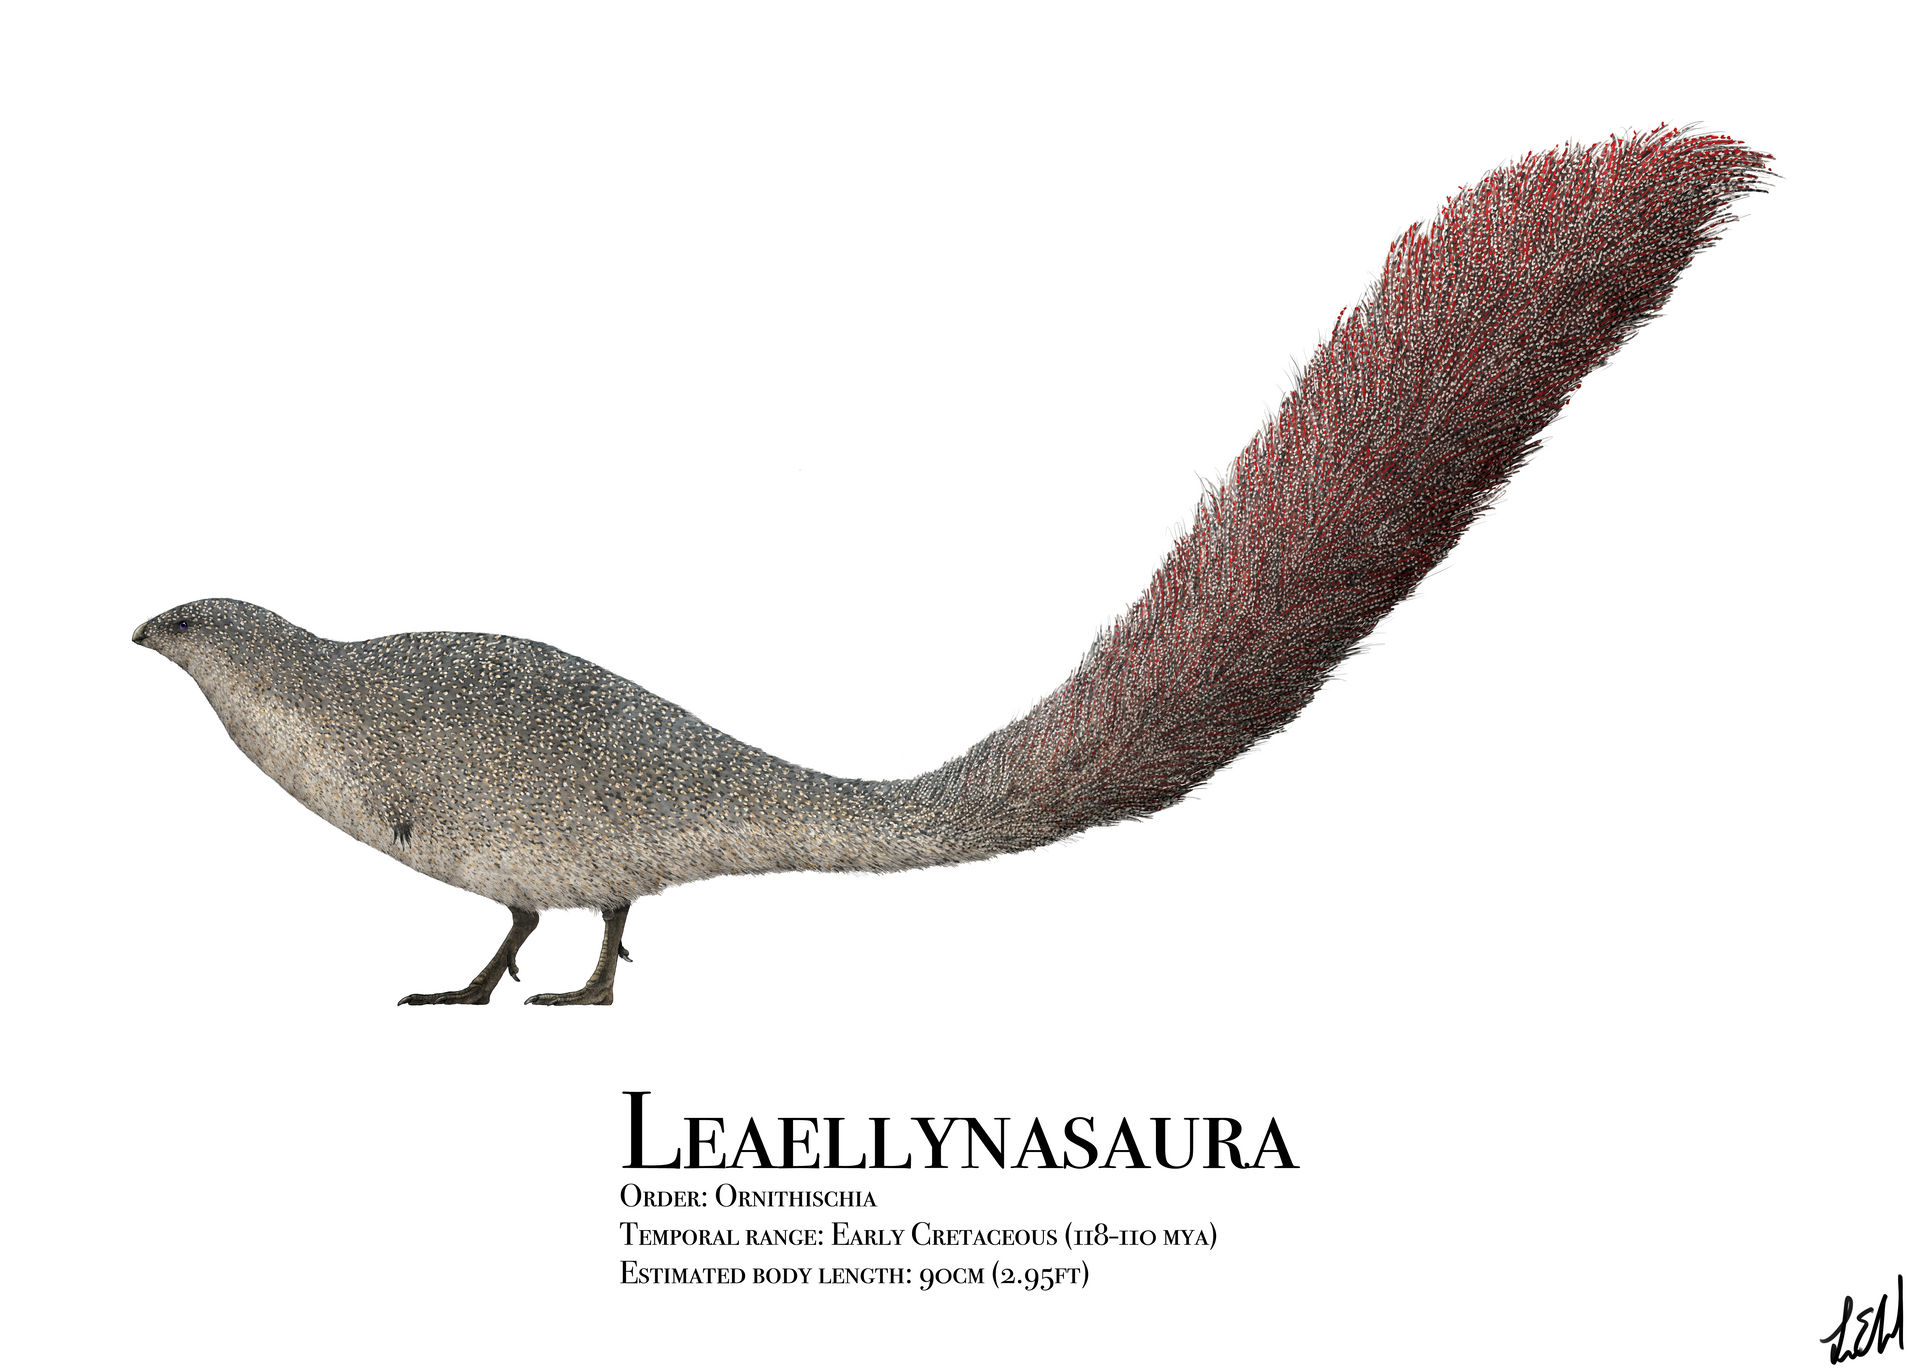 leaellynasaura_by_prehistorybyliam_dd3m7ow-fullview.jpg